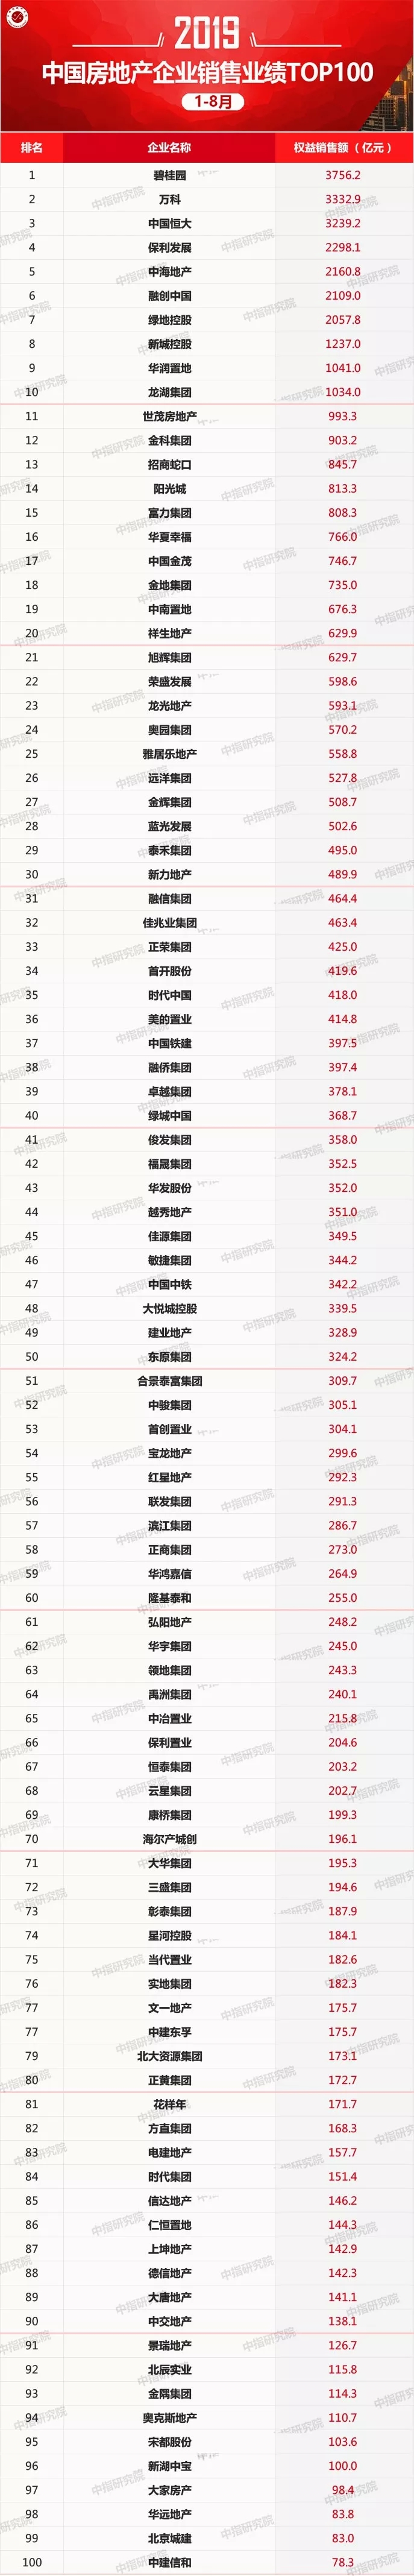 2019年1-8月中国房地产企业销售业绩100